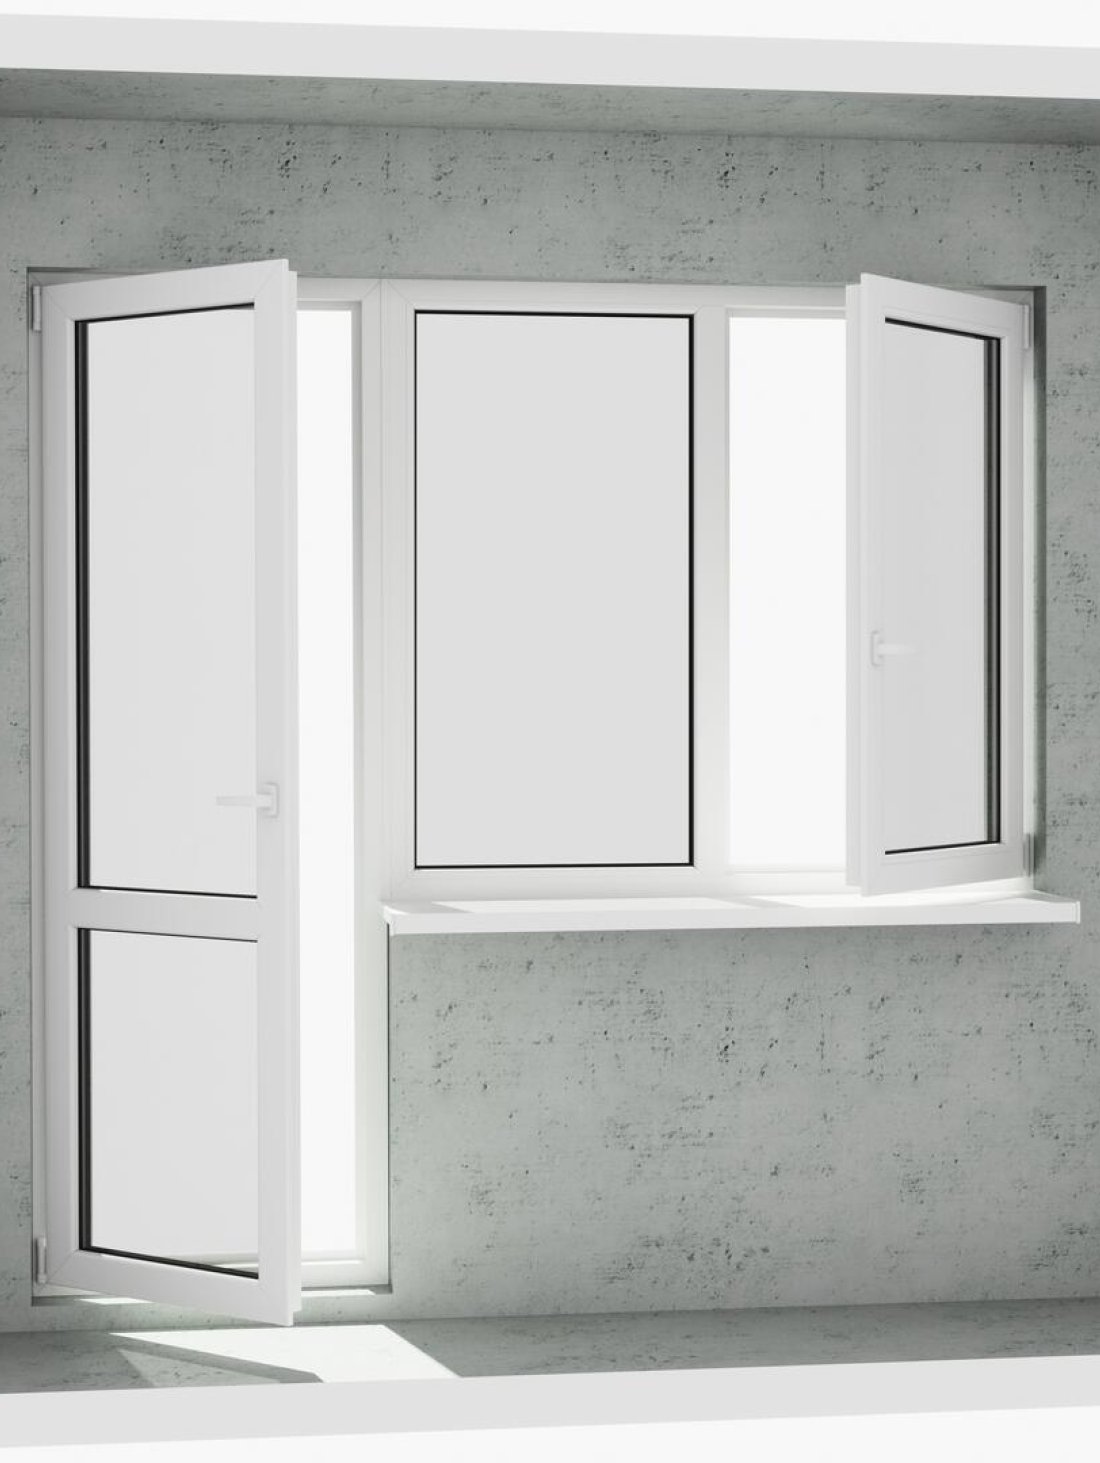 Выход на лоджию (балкон): классический белый металлопластиковый балконный блок (в двери есть режим проветривания и открывается 1 половинка окна) - Паритет